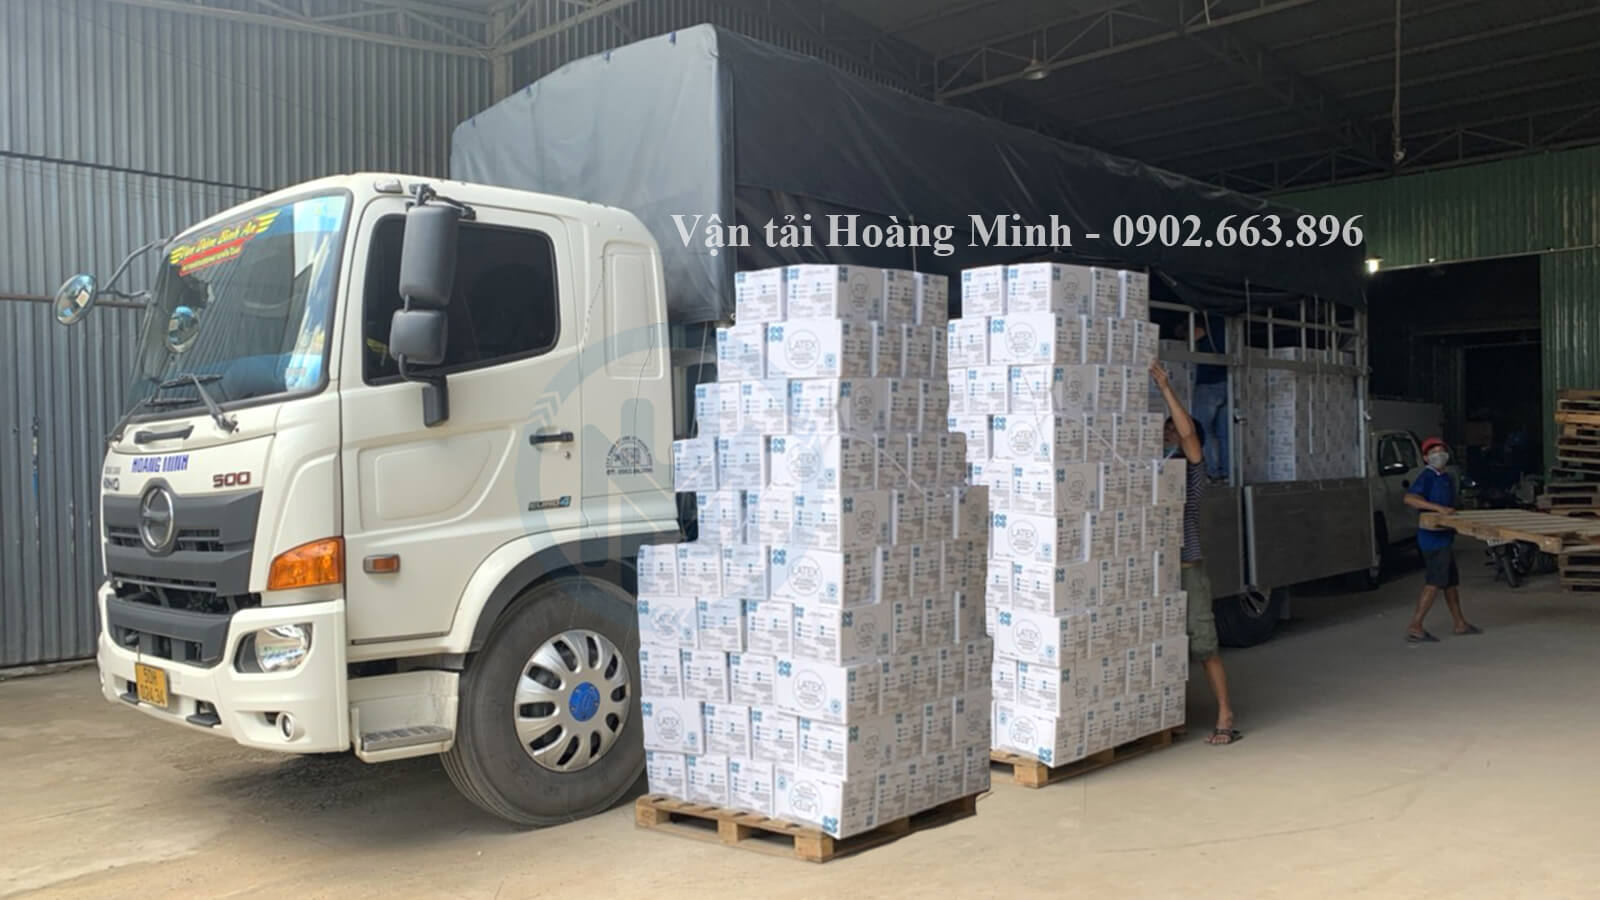 Xe tải Hoàng Minh chuyên vận chuyển hàng hoá cho khách đi các tỉnh thành.jpg